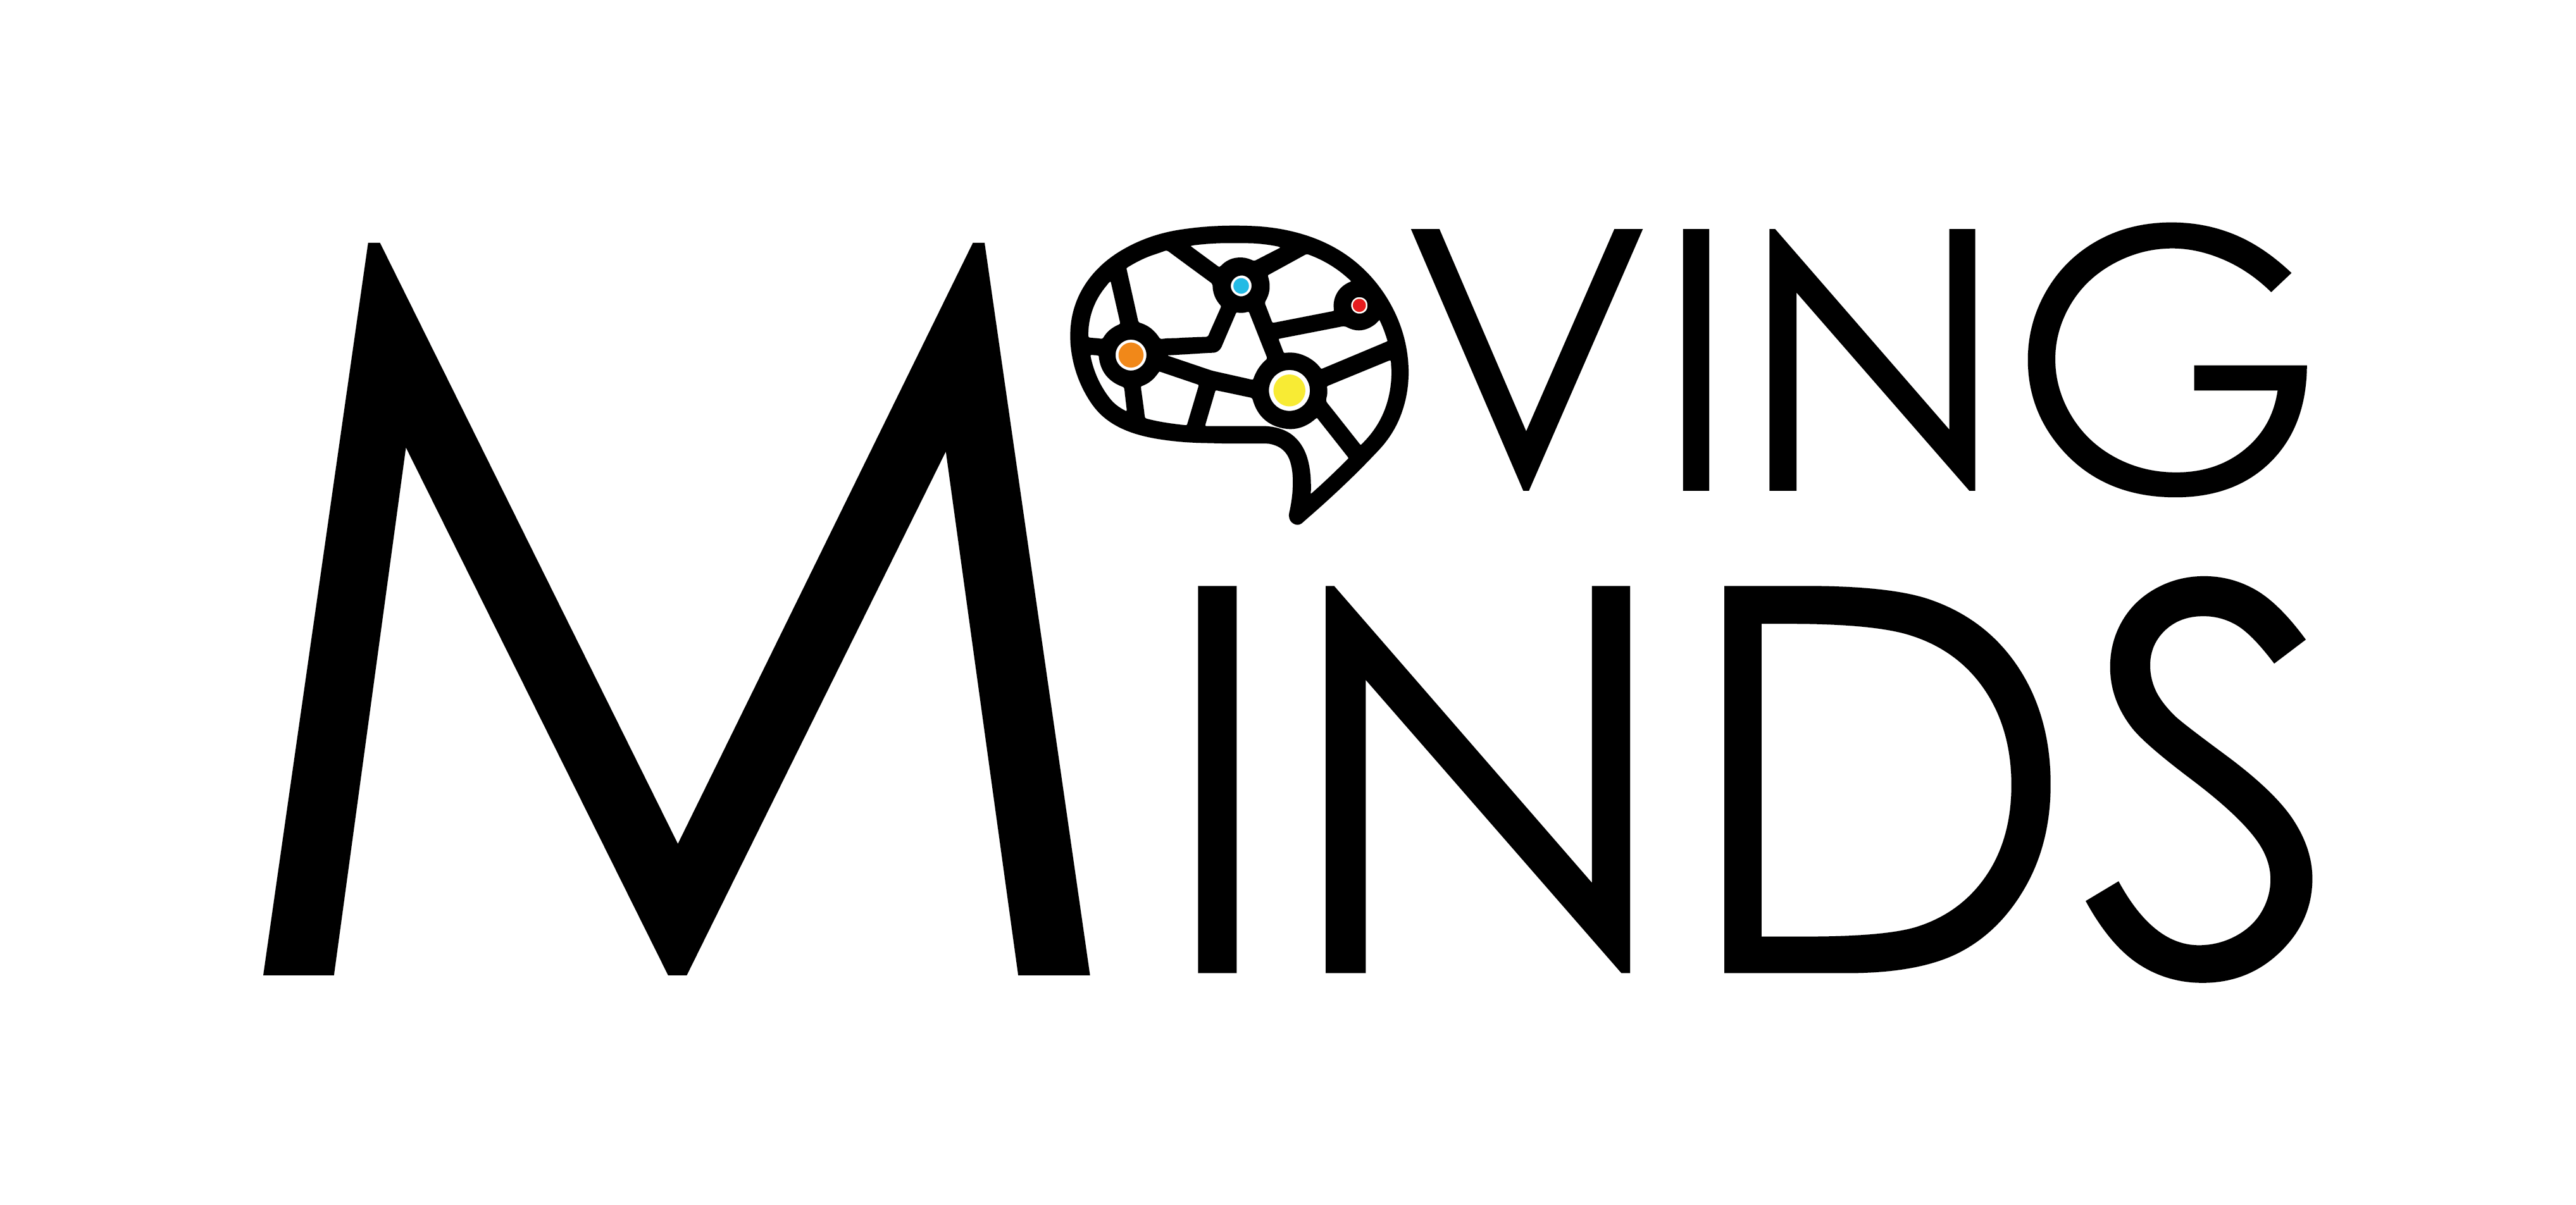 Publicada  la nueva convocatoria de movilidad internacional para investigación y formación técnica: Moving Minds 2022